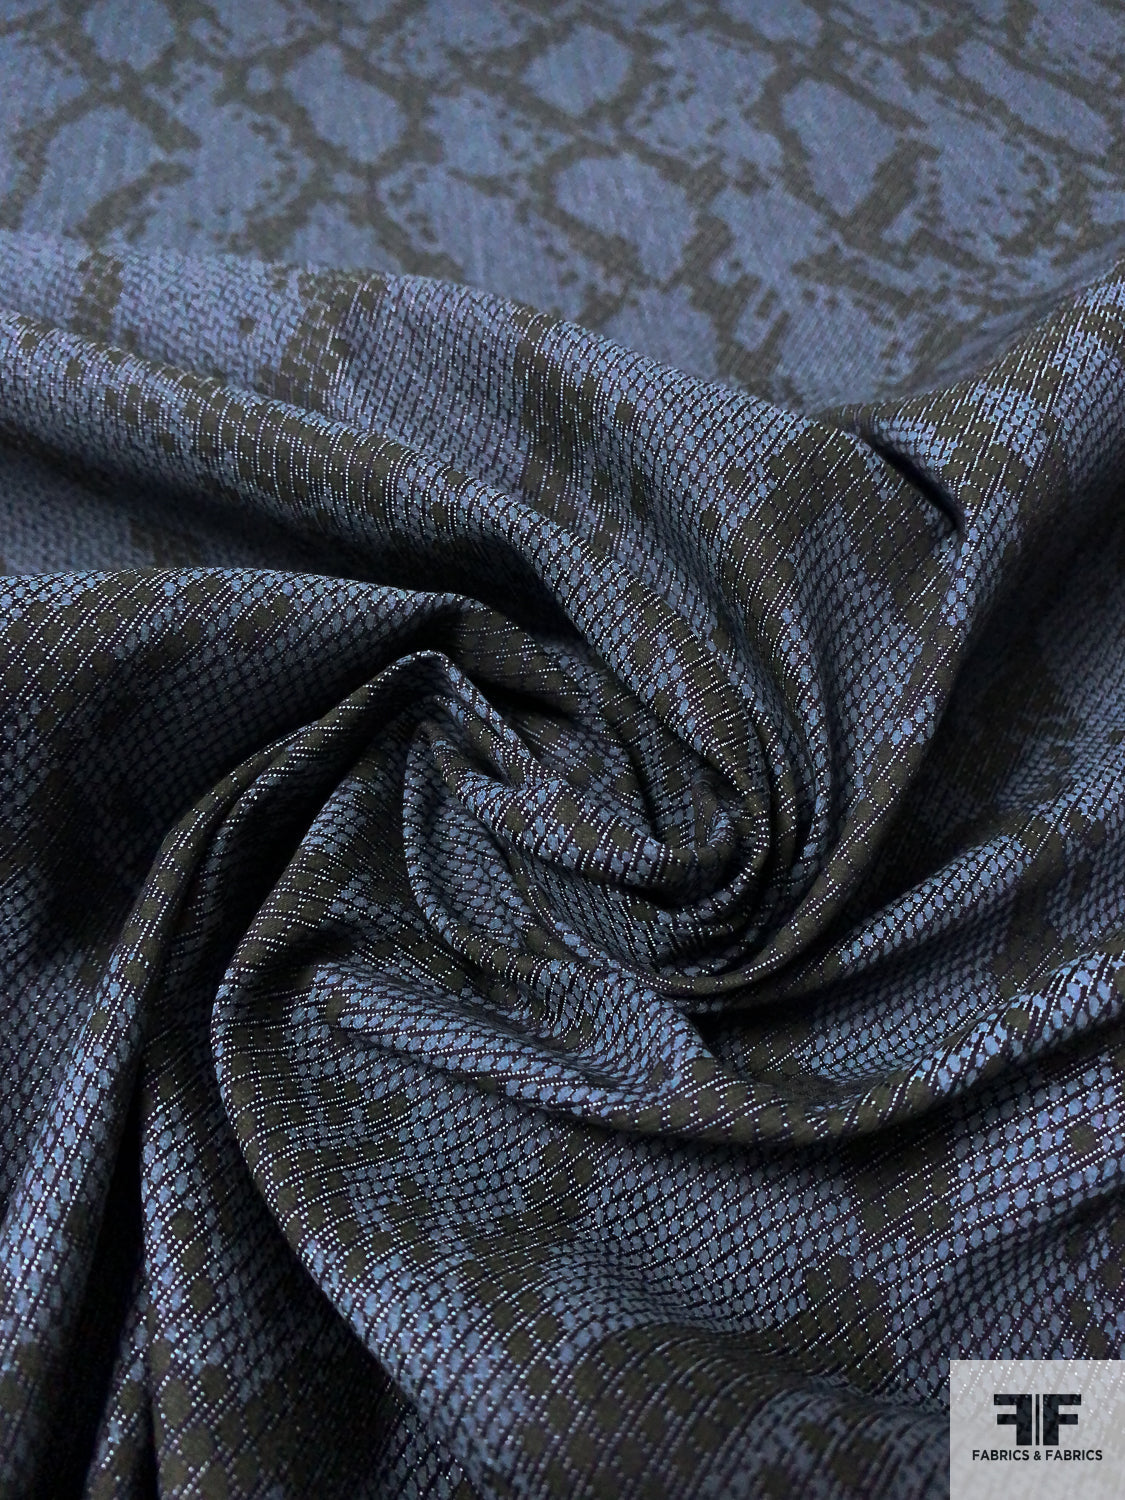 Snakeskin Pattern Printed Stretch Cotton Denim - Denim Blue / Steel Grey